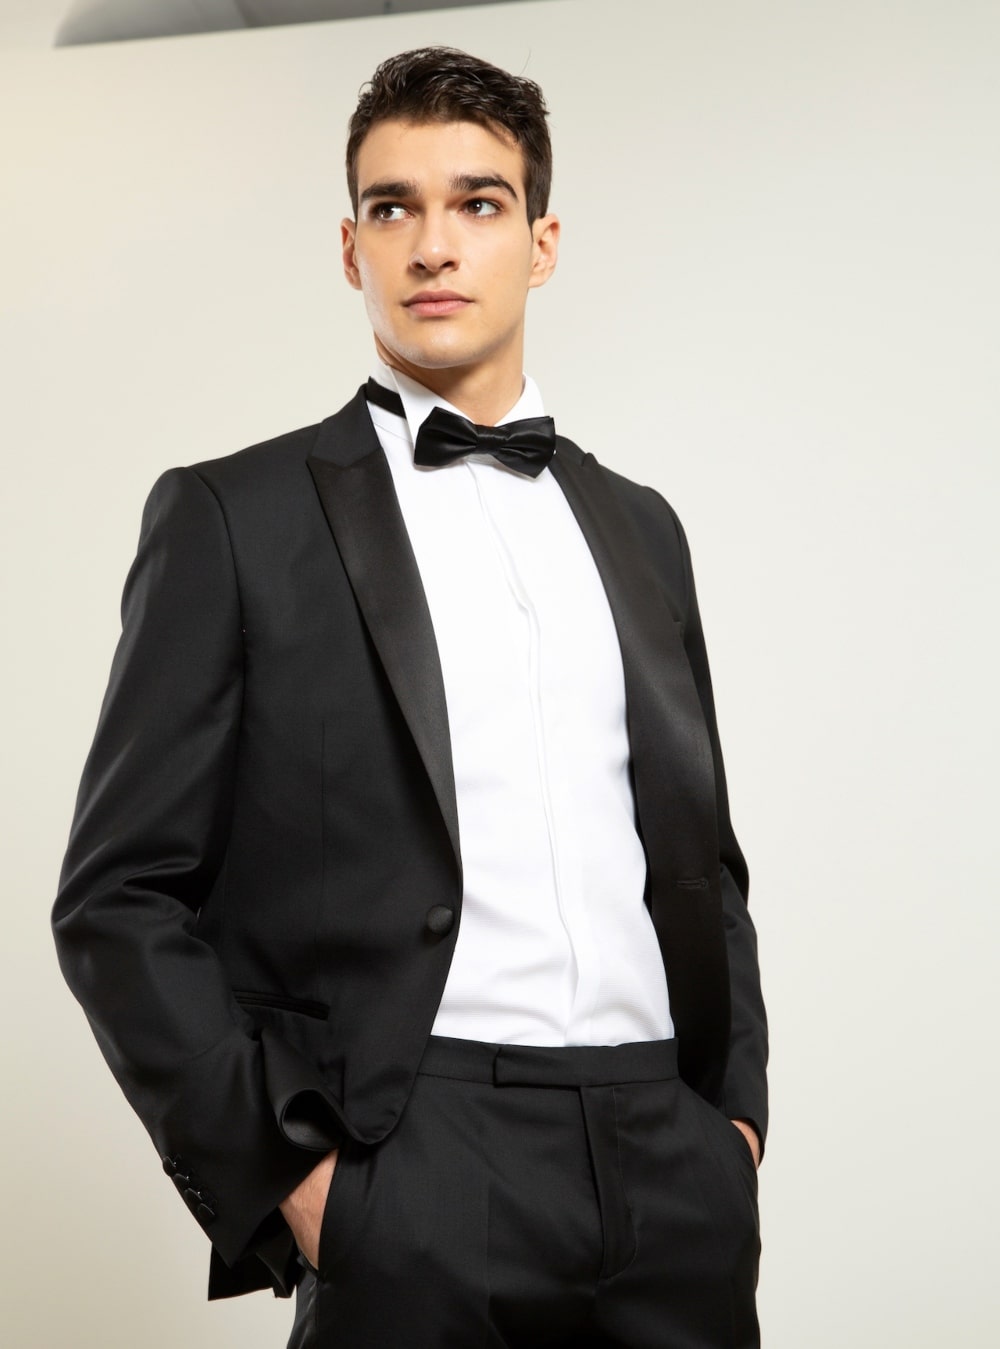 musko odelo za svadbu 1 min Muško odelo za venčanje: Šta da obučete kao gost koji želi da se istakne?